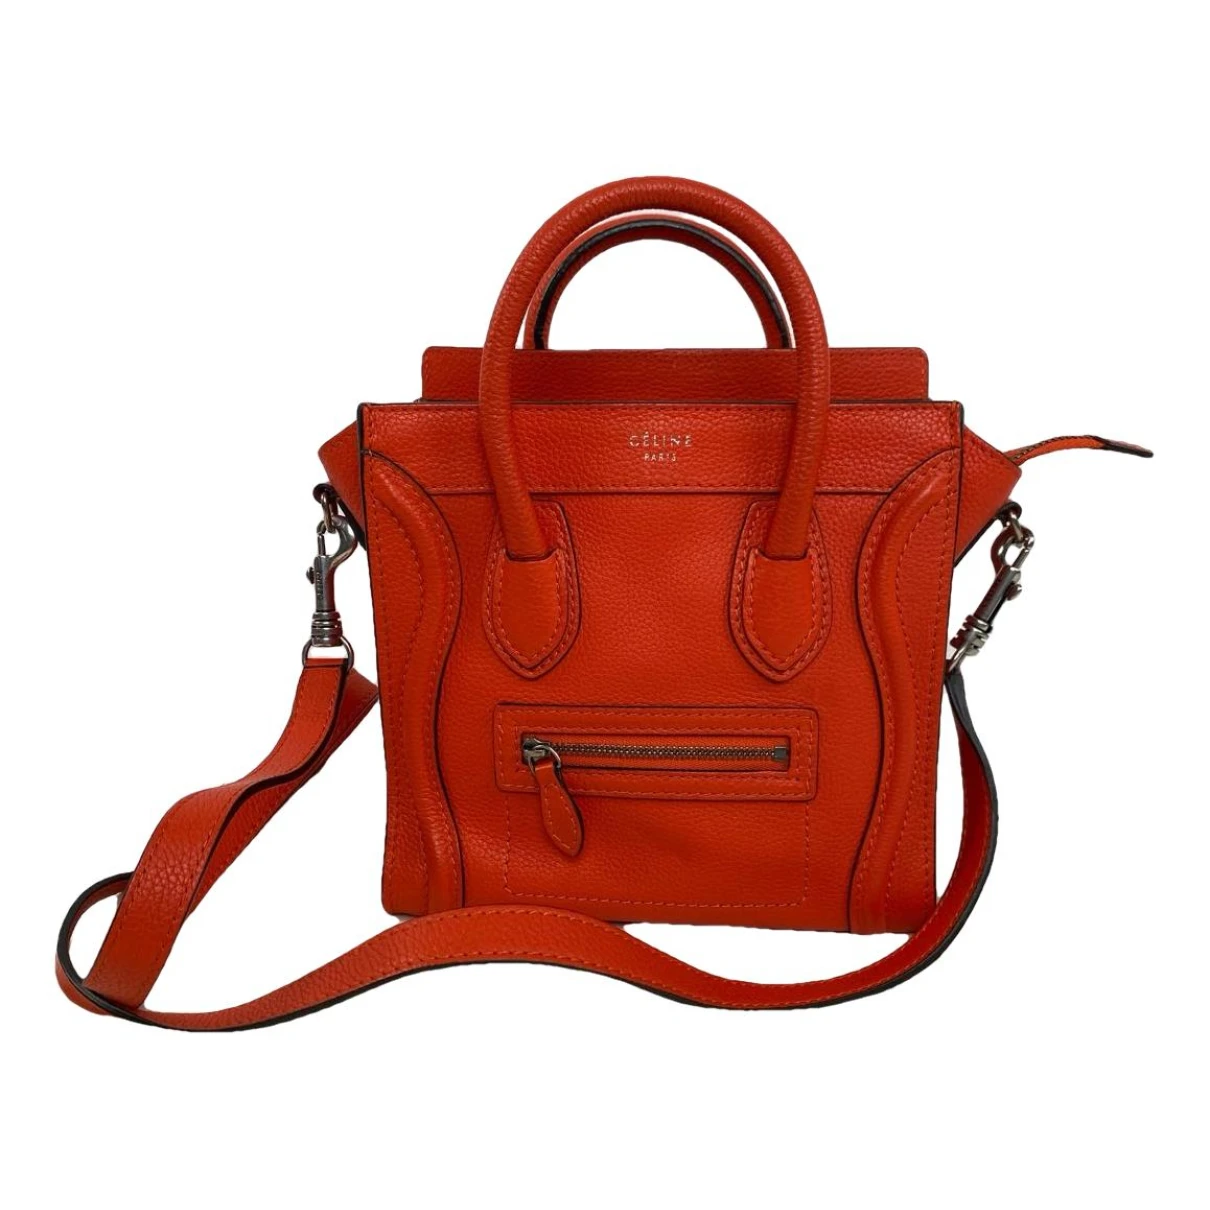 Pre-owned Celine Nano Luggage Leather Handbag In Orange